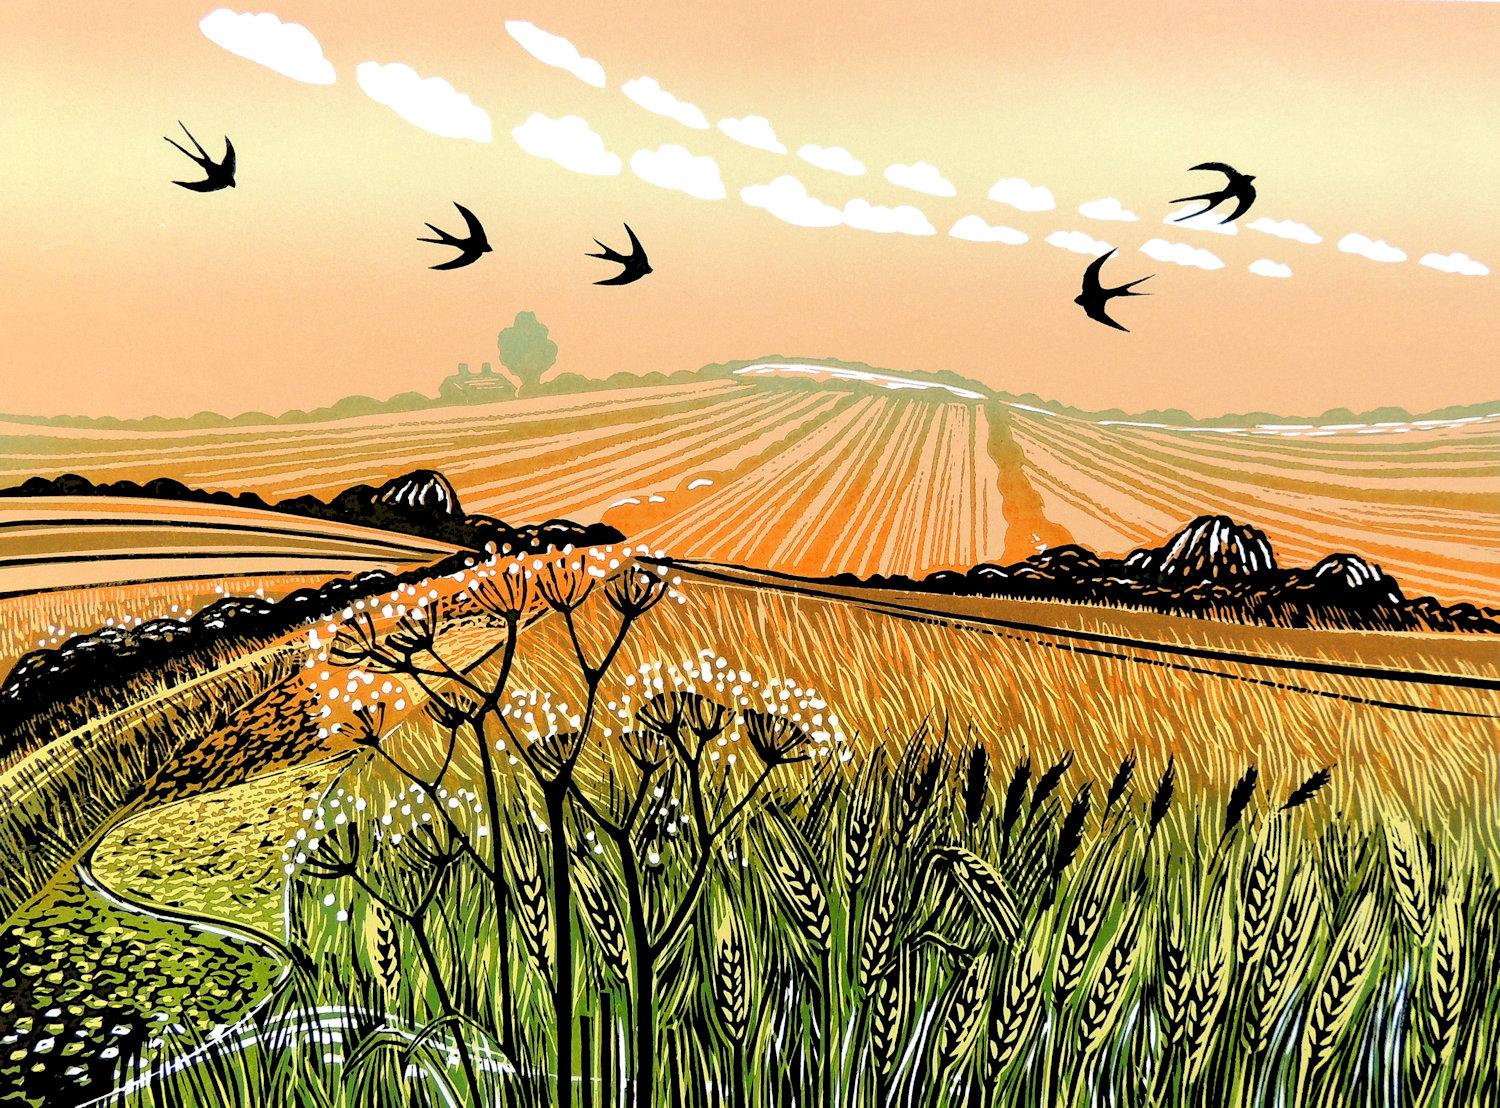 Rob Barnes Animal Print – Schwalben im Sommer, Linolschnitt, Landschaftskunst, Natur, Vögel